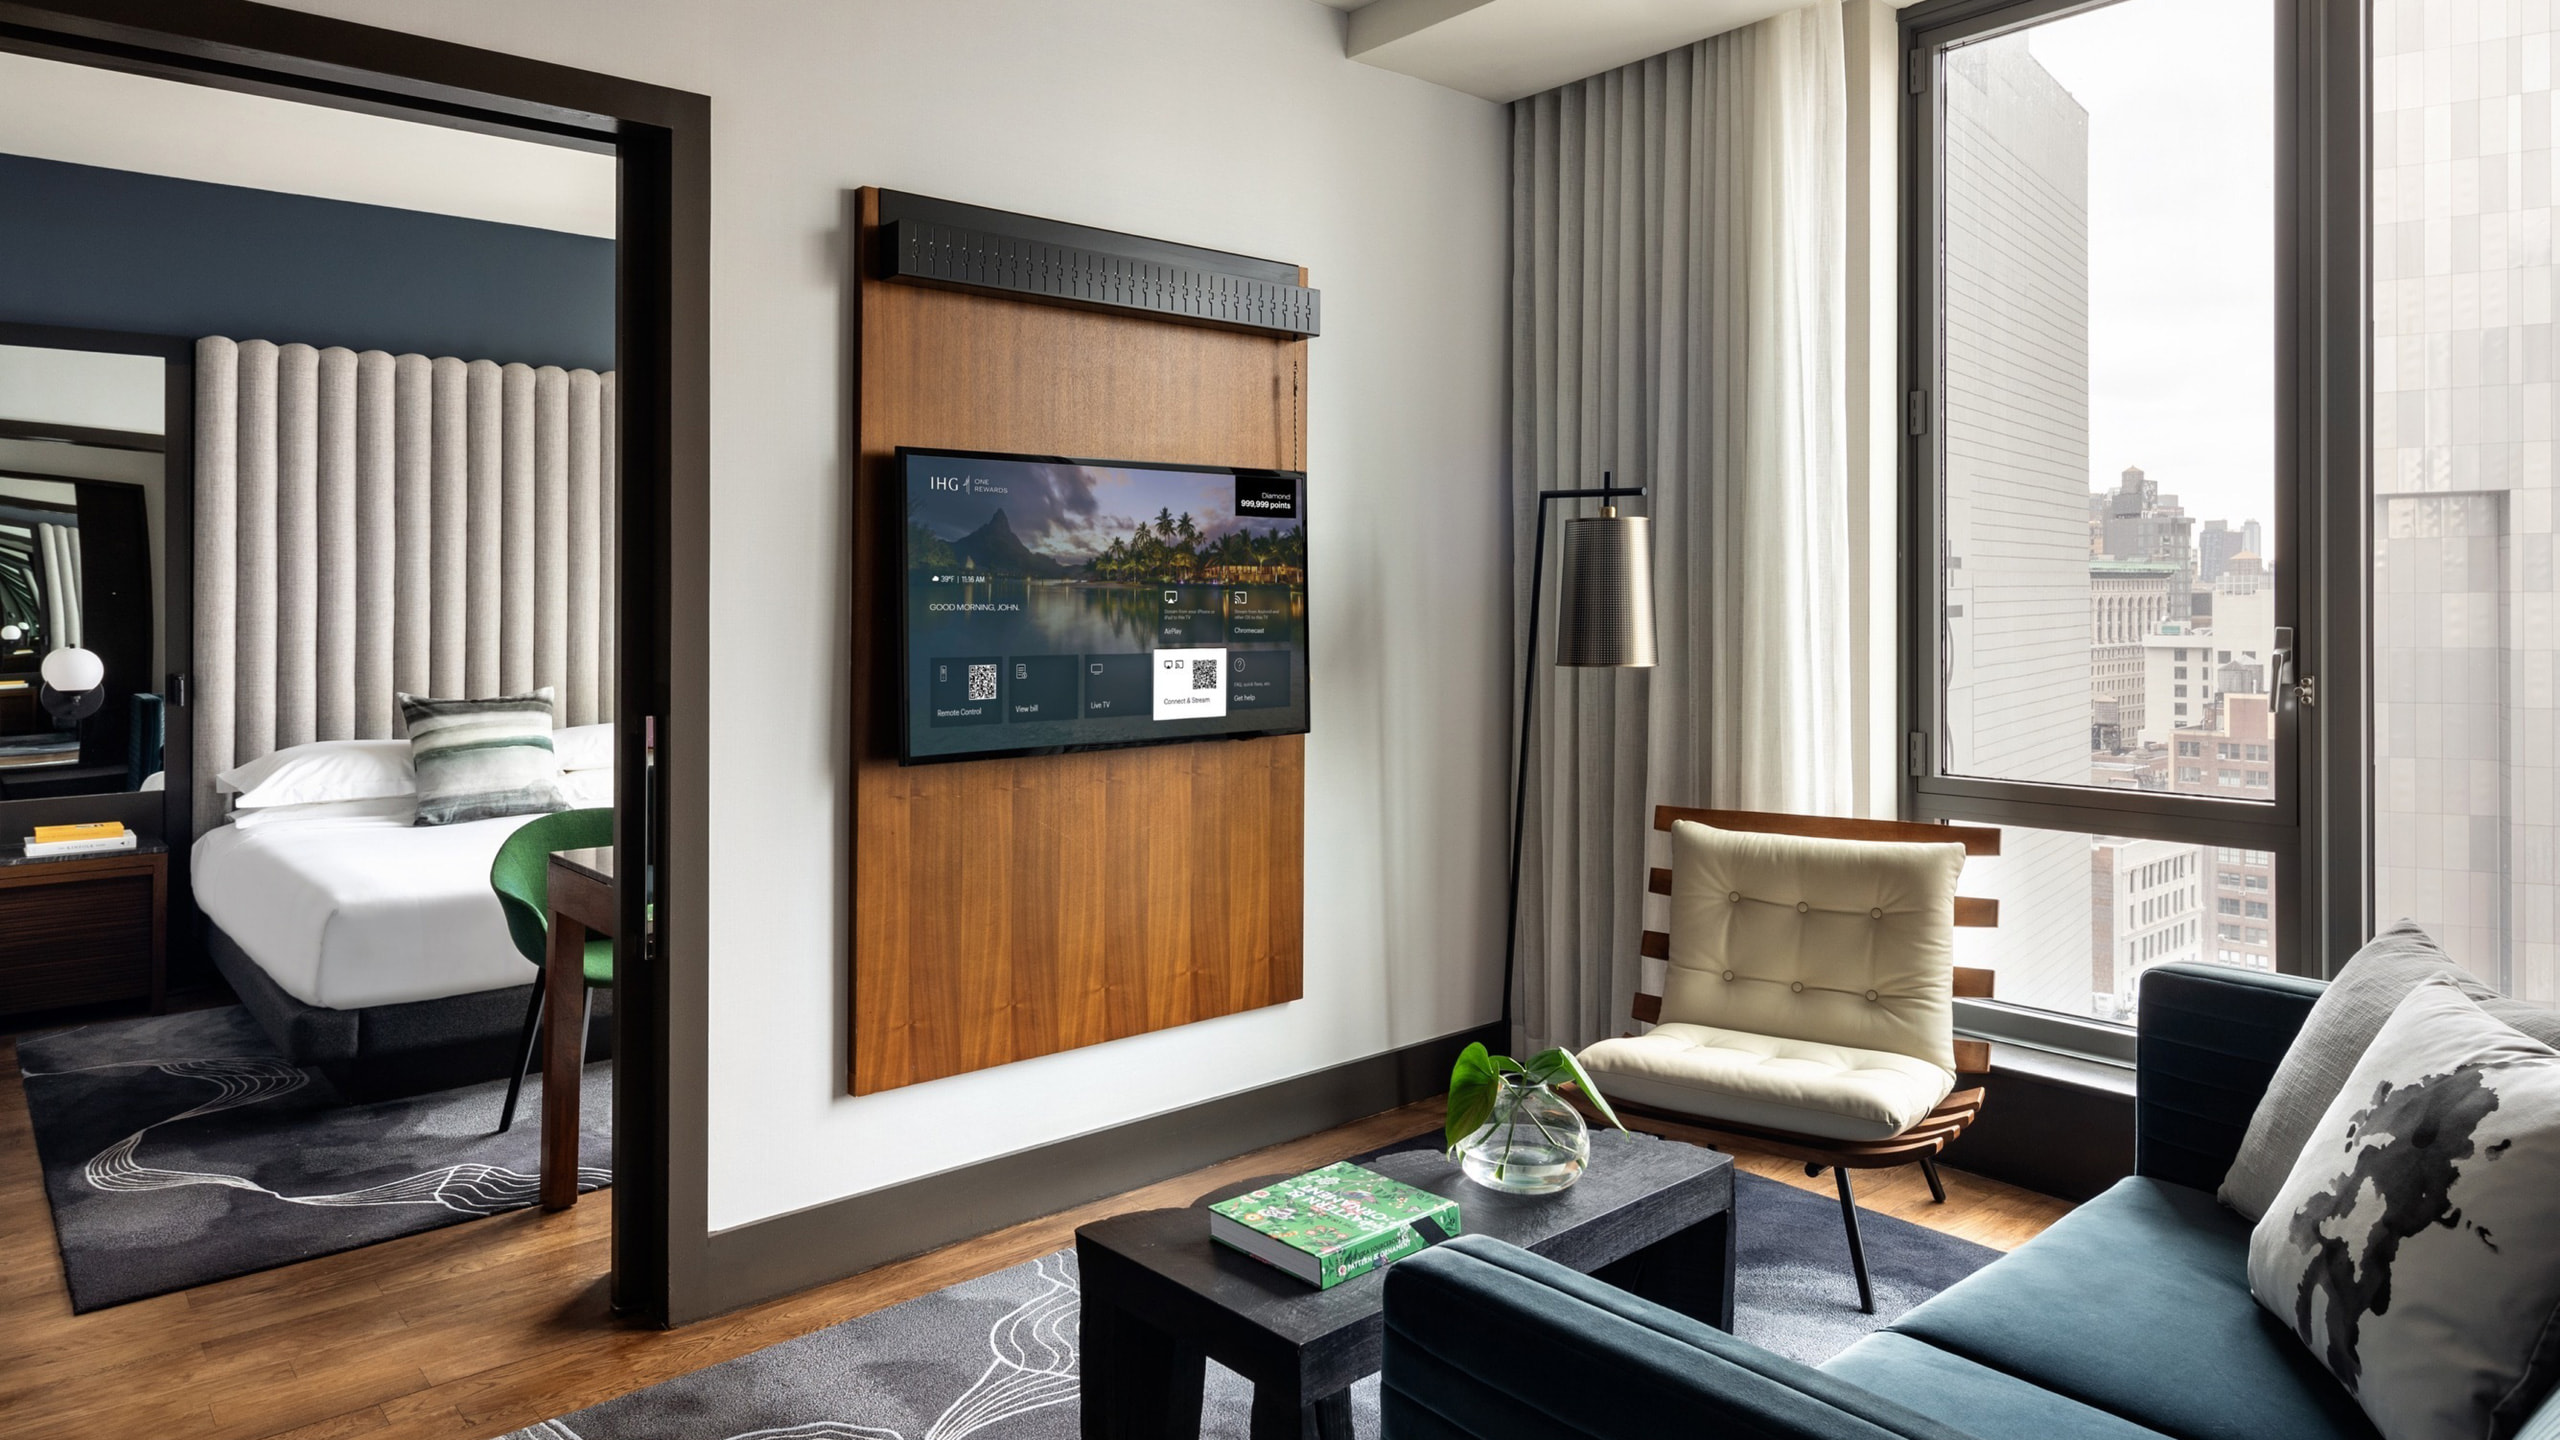 AirPlay s’affiche sur un téléviseur LG dans une chambre d’hôtel.